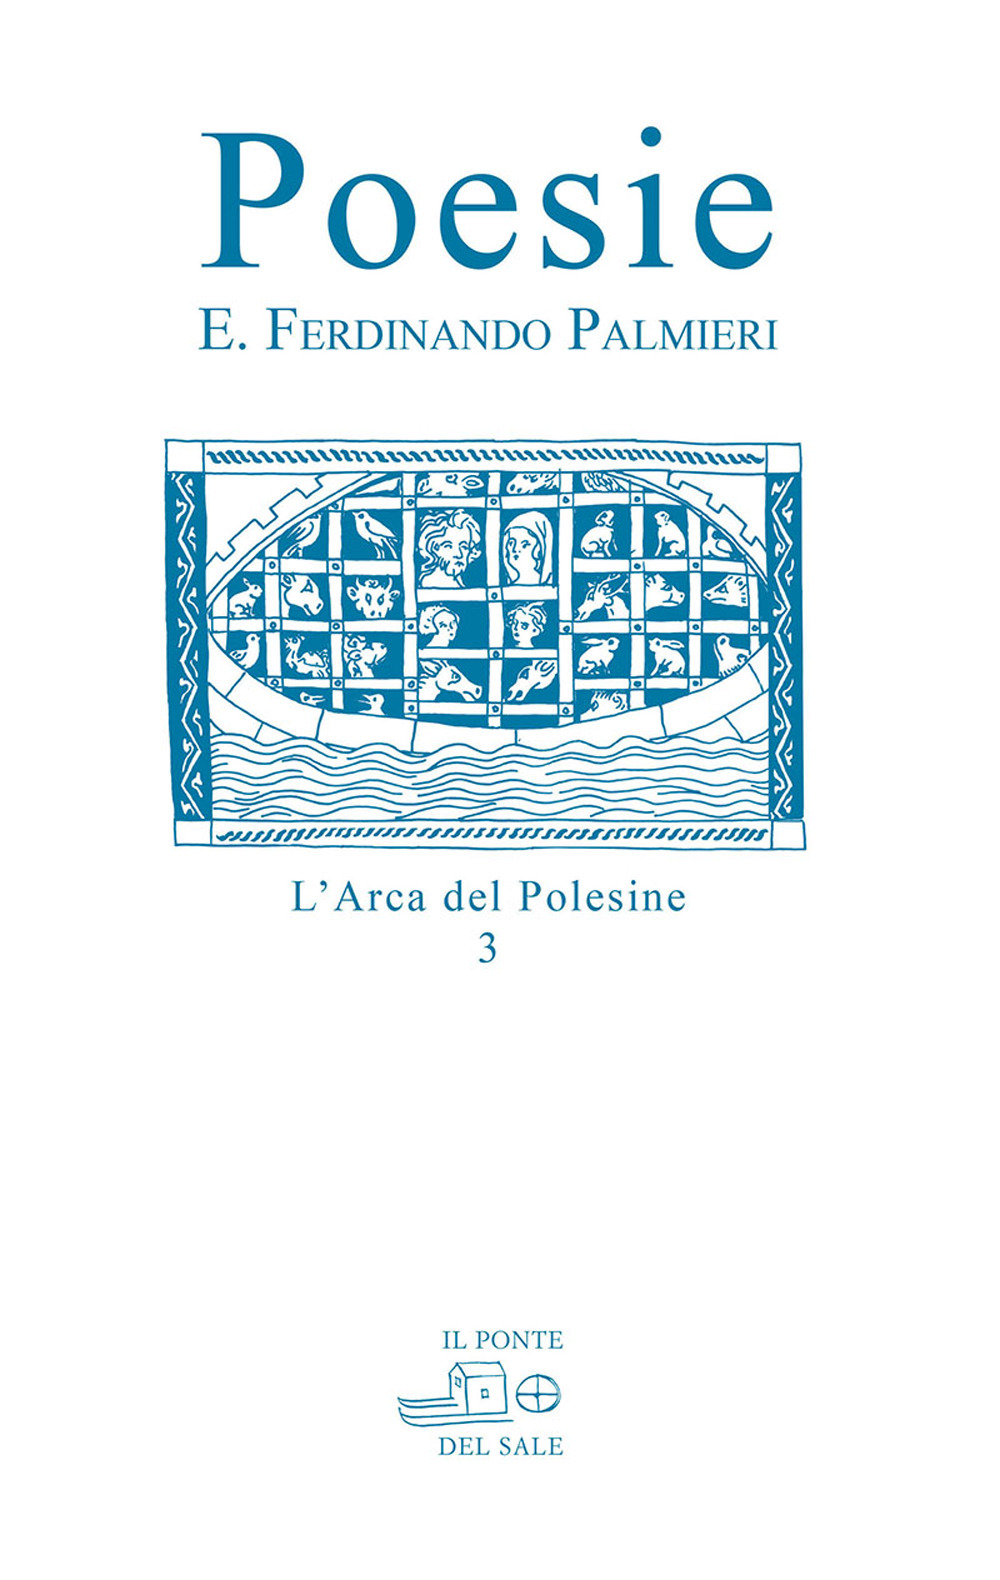 Libri Palmieri Eugenio F. - Poesie NUOVO SIGILLATO, EDIZIONE DEL 02/11/2020 SUBITO DISPONIBILE